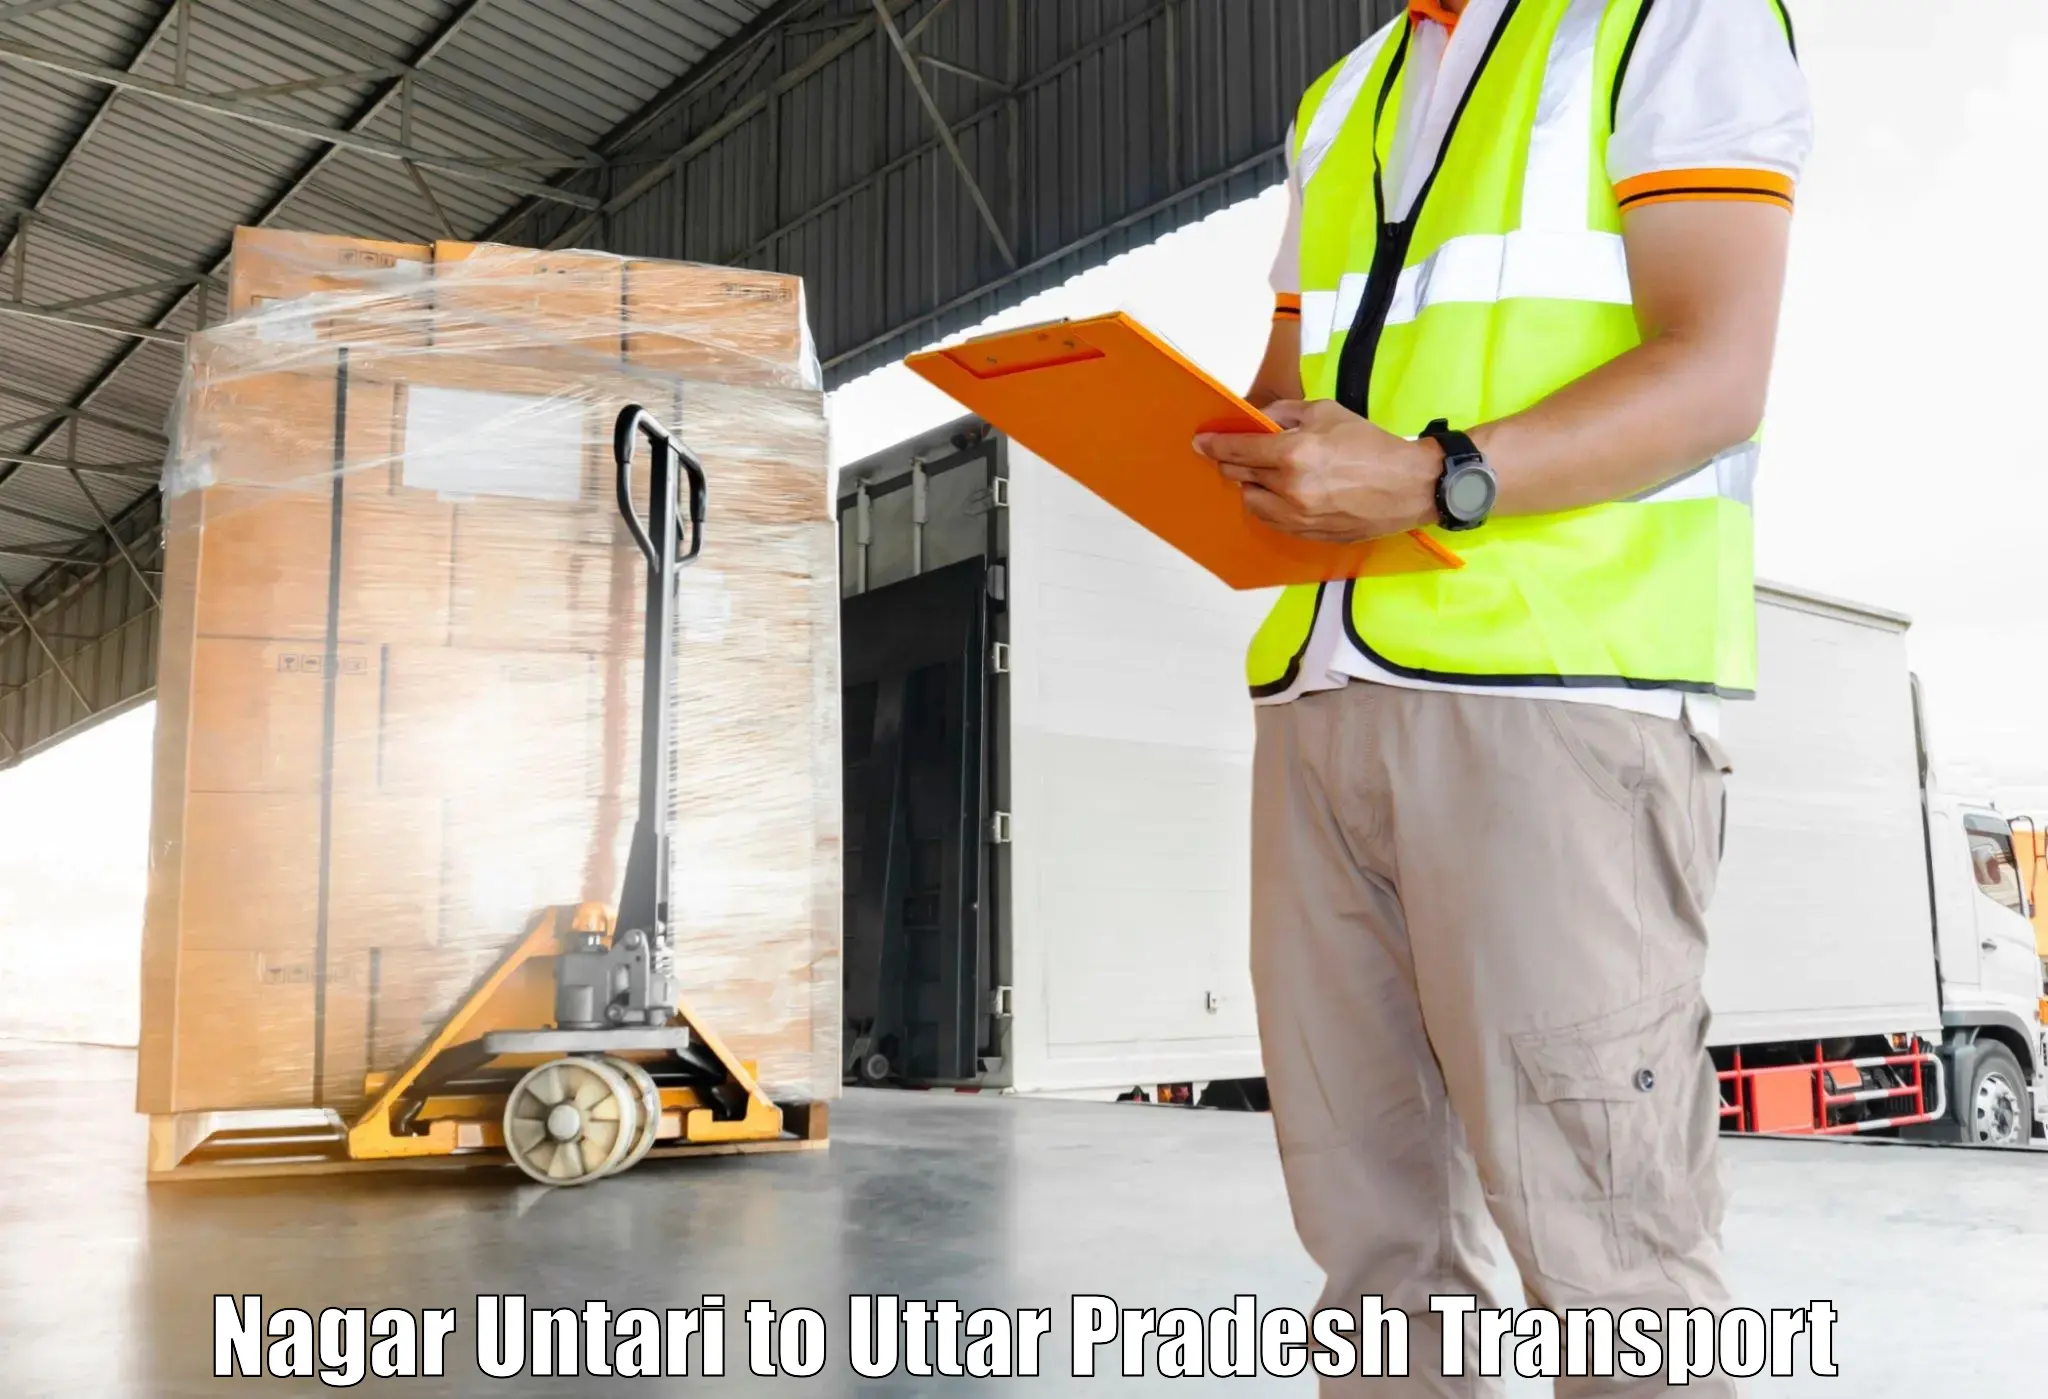 Commercial transport service Nagar Untari to Faridpur